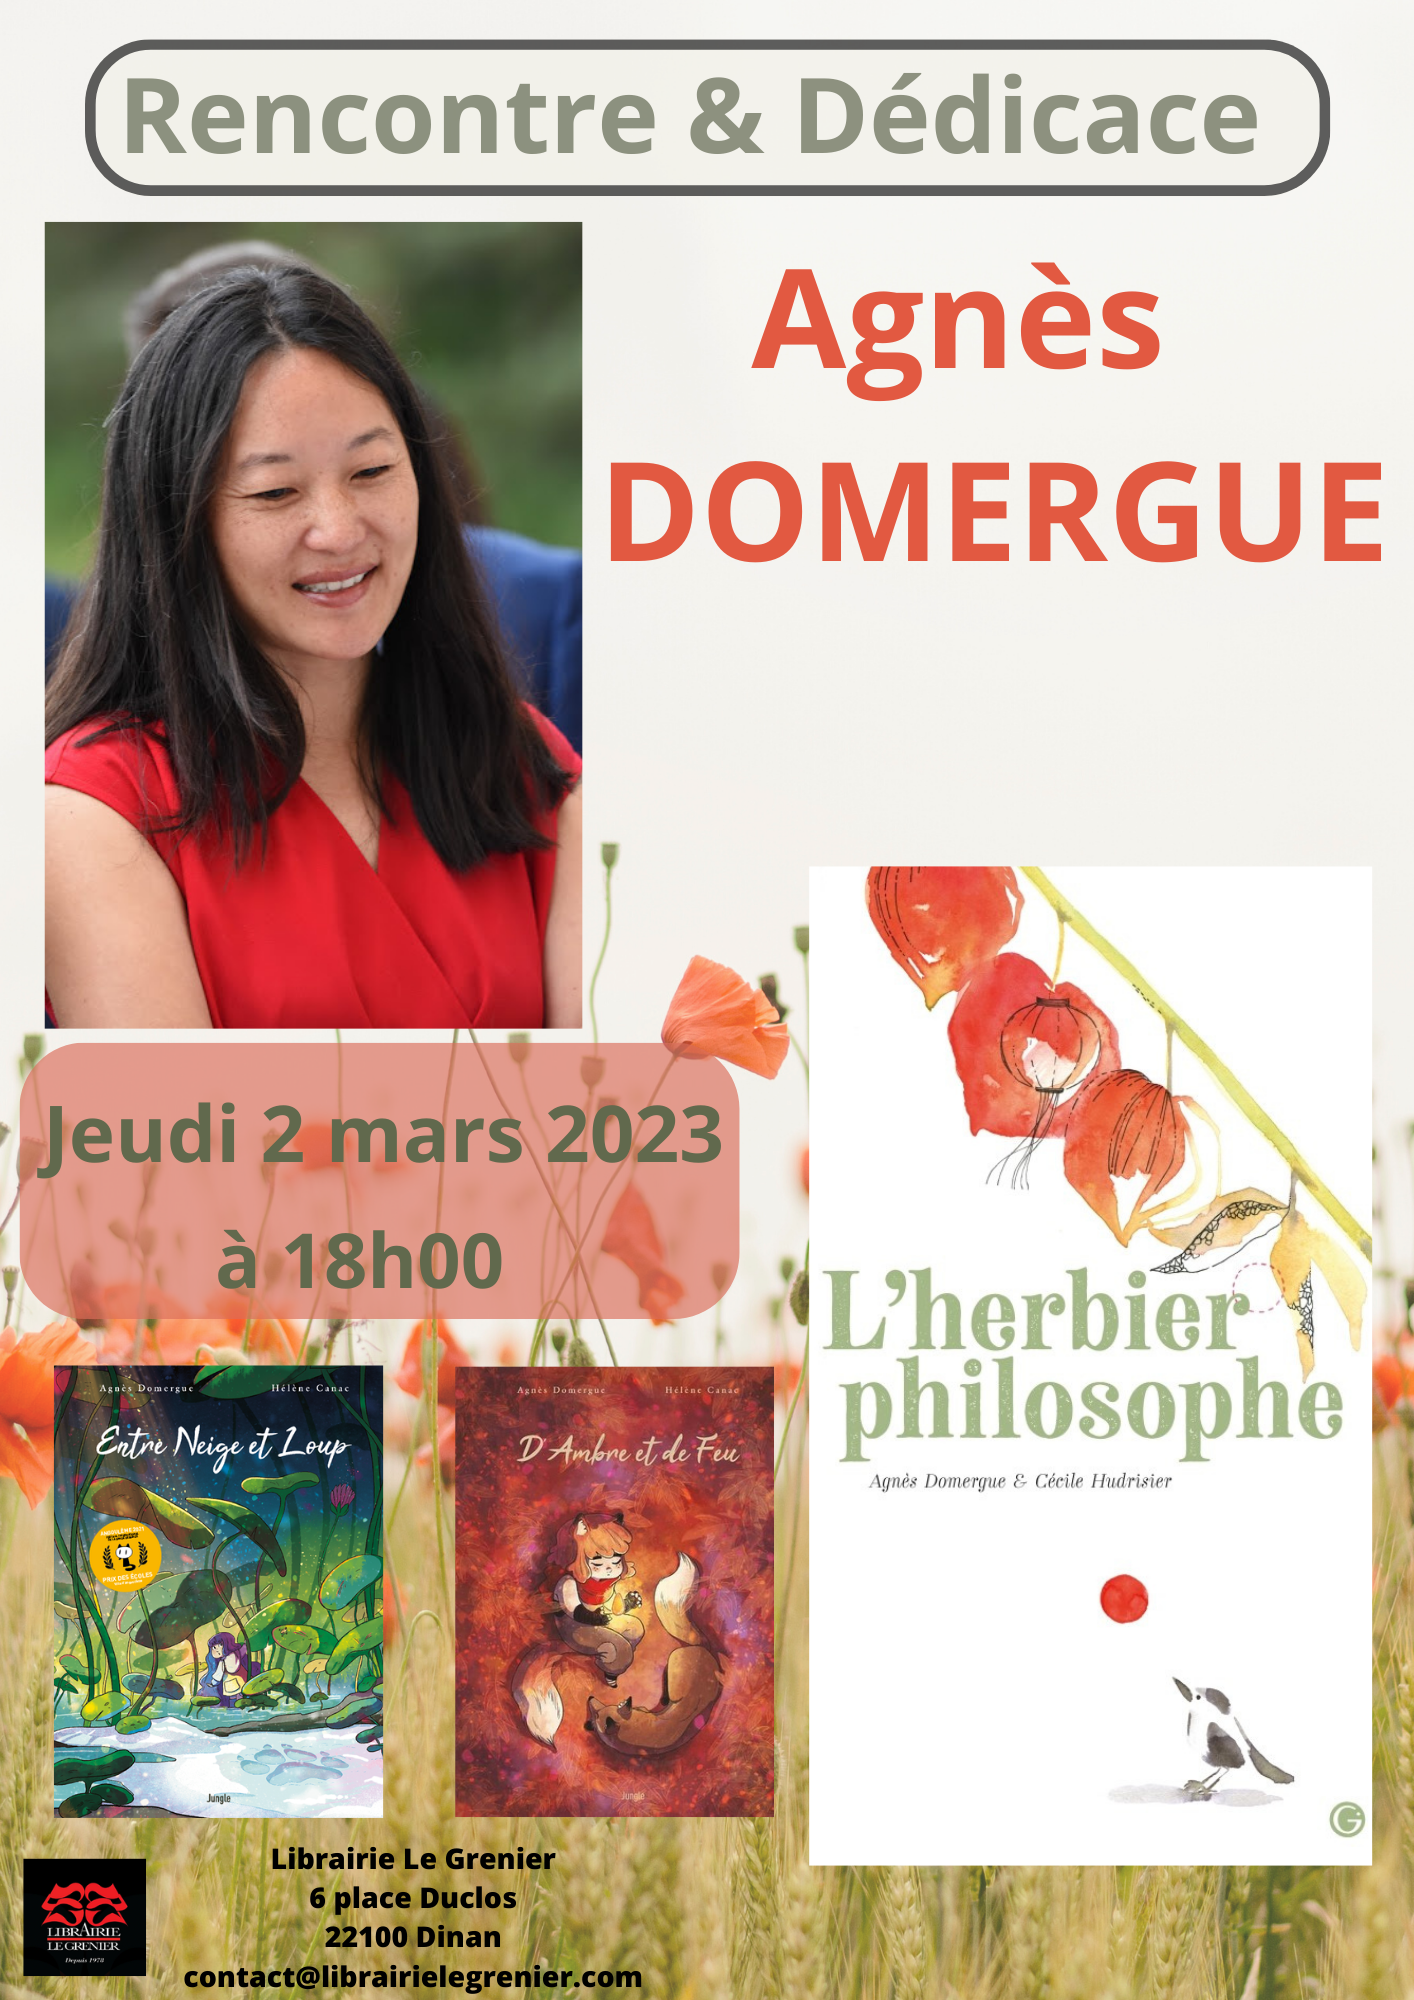 Rencontre & Dédicace avec Agnès Domergue